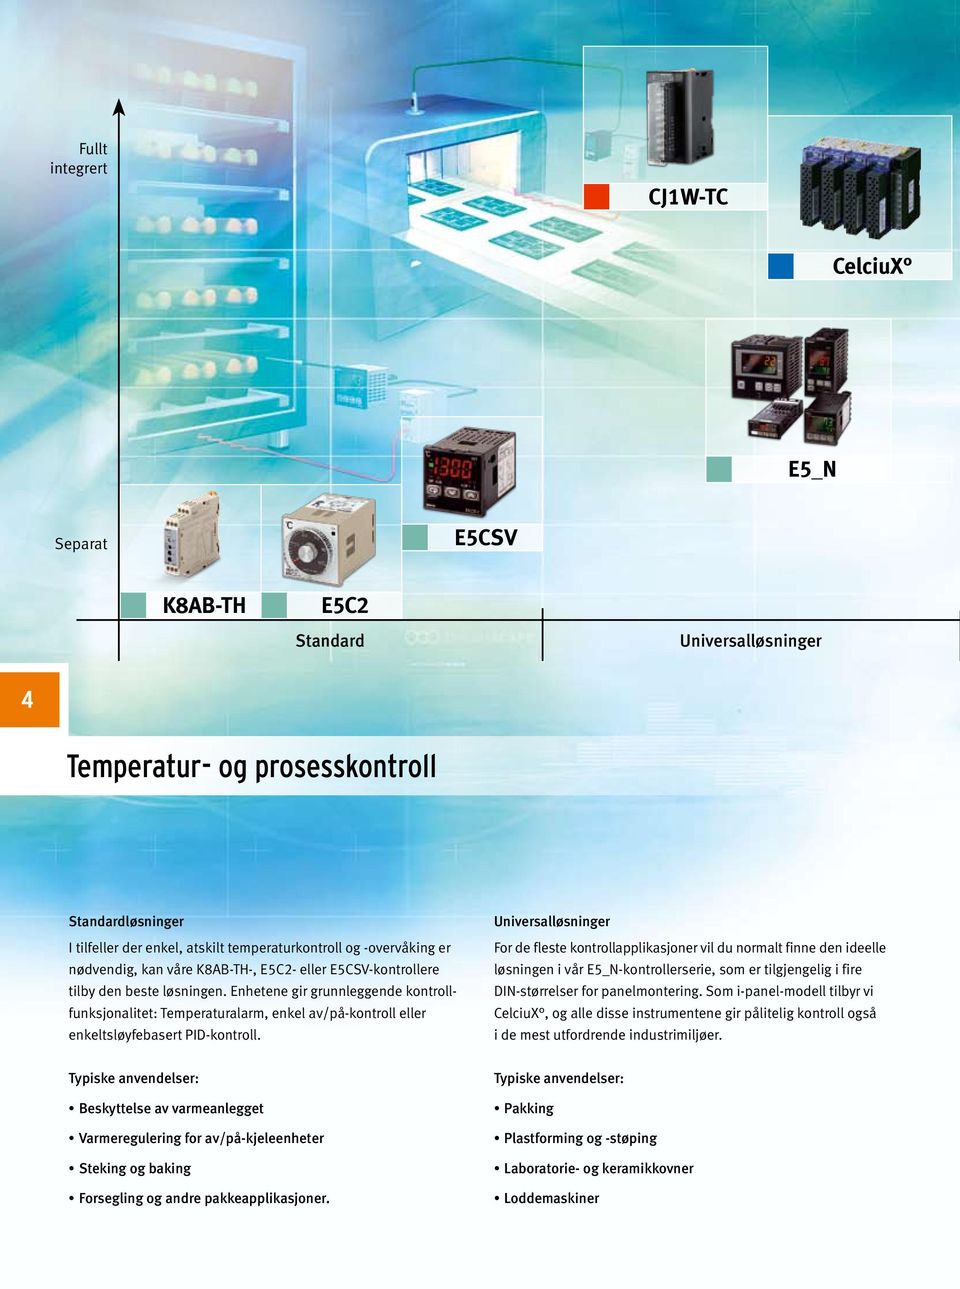 Enhetene gir grunnleggende kontrollfunksjonalitet: Temperaturalarm, enkel av/på-kontroll eller enkeltsløyfebasert PID-kontroll.